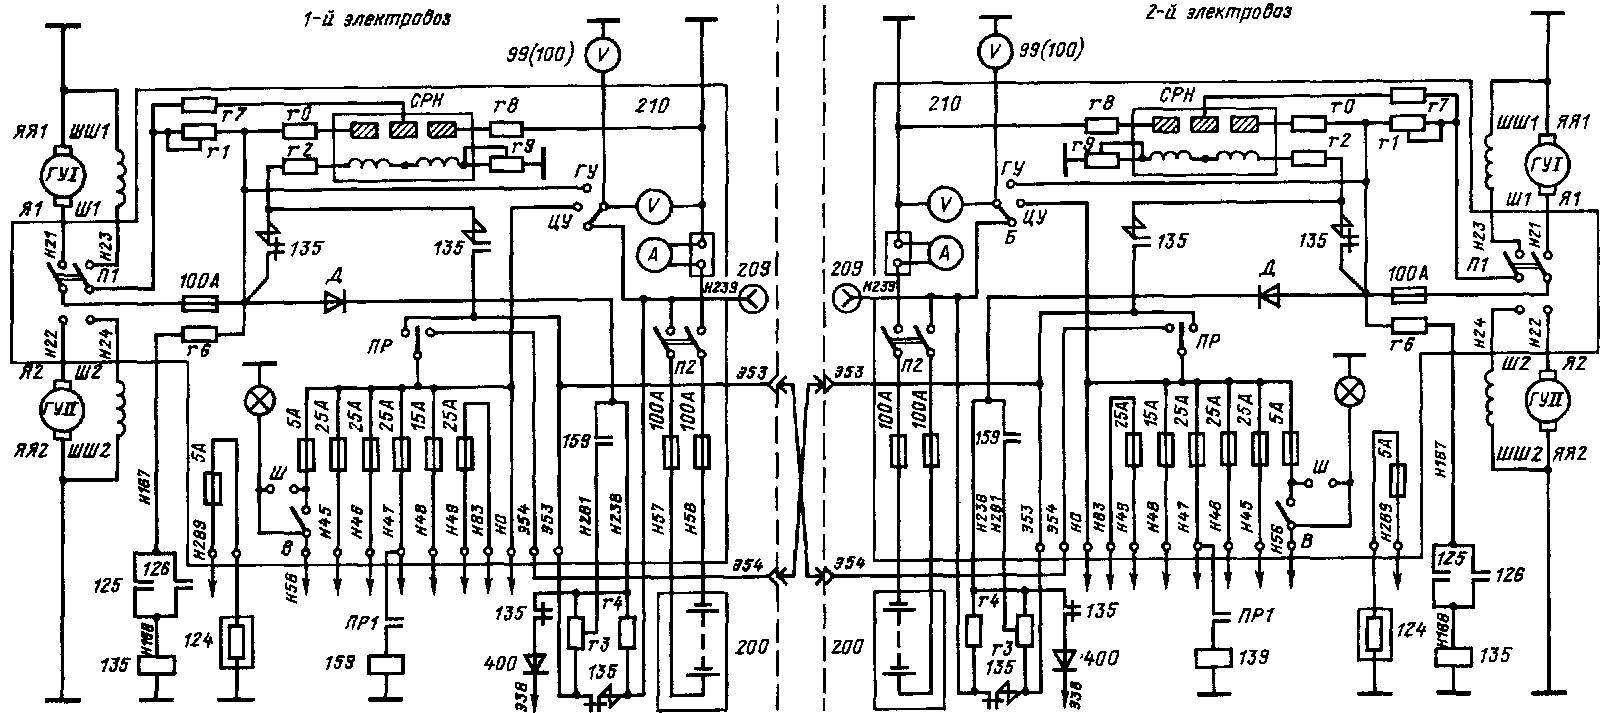 Схема резервирования источников питания цепей управления электровозов ВЛ60